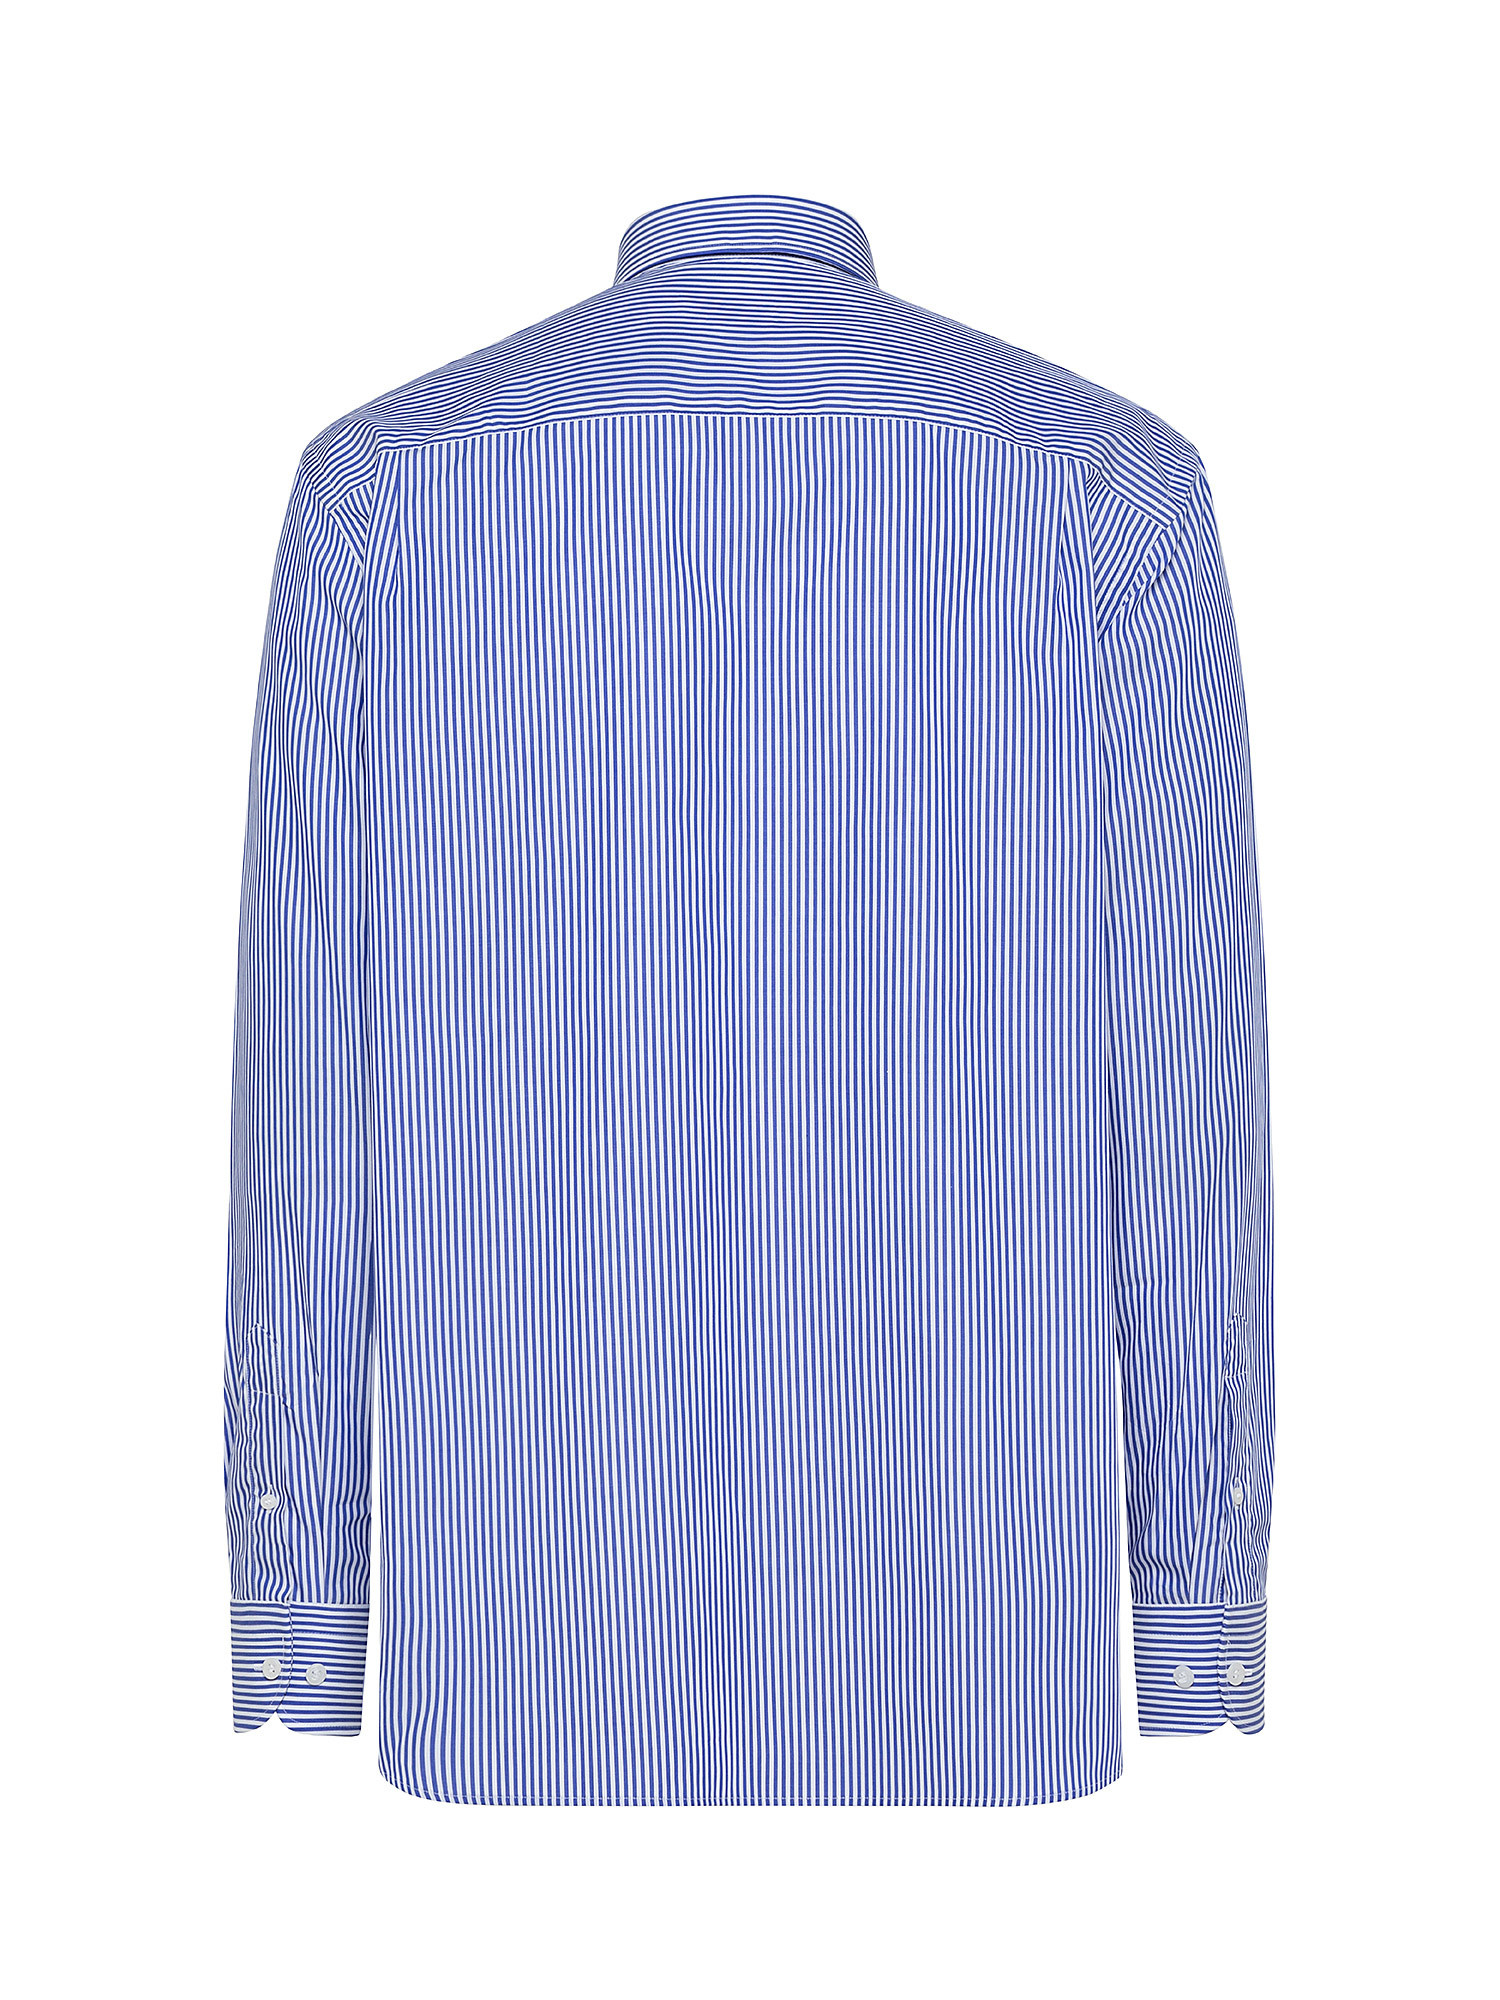 Camicia regular fit in popeline doppio ritorto, Azzurro, large